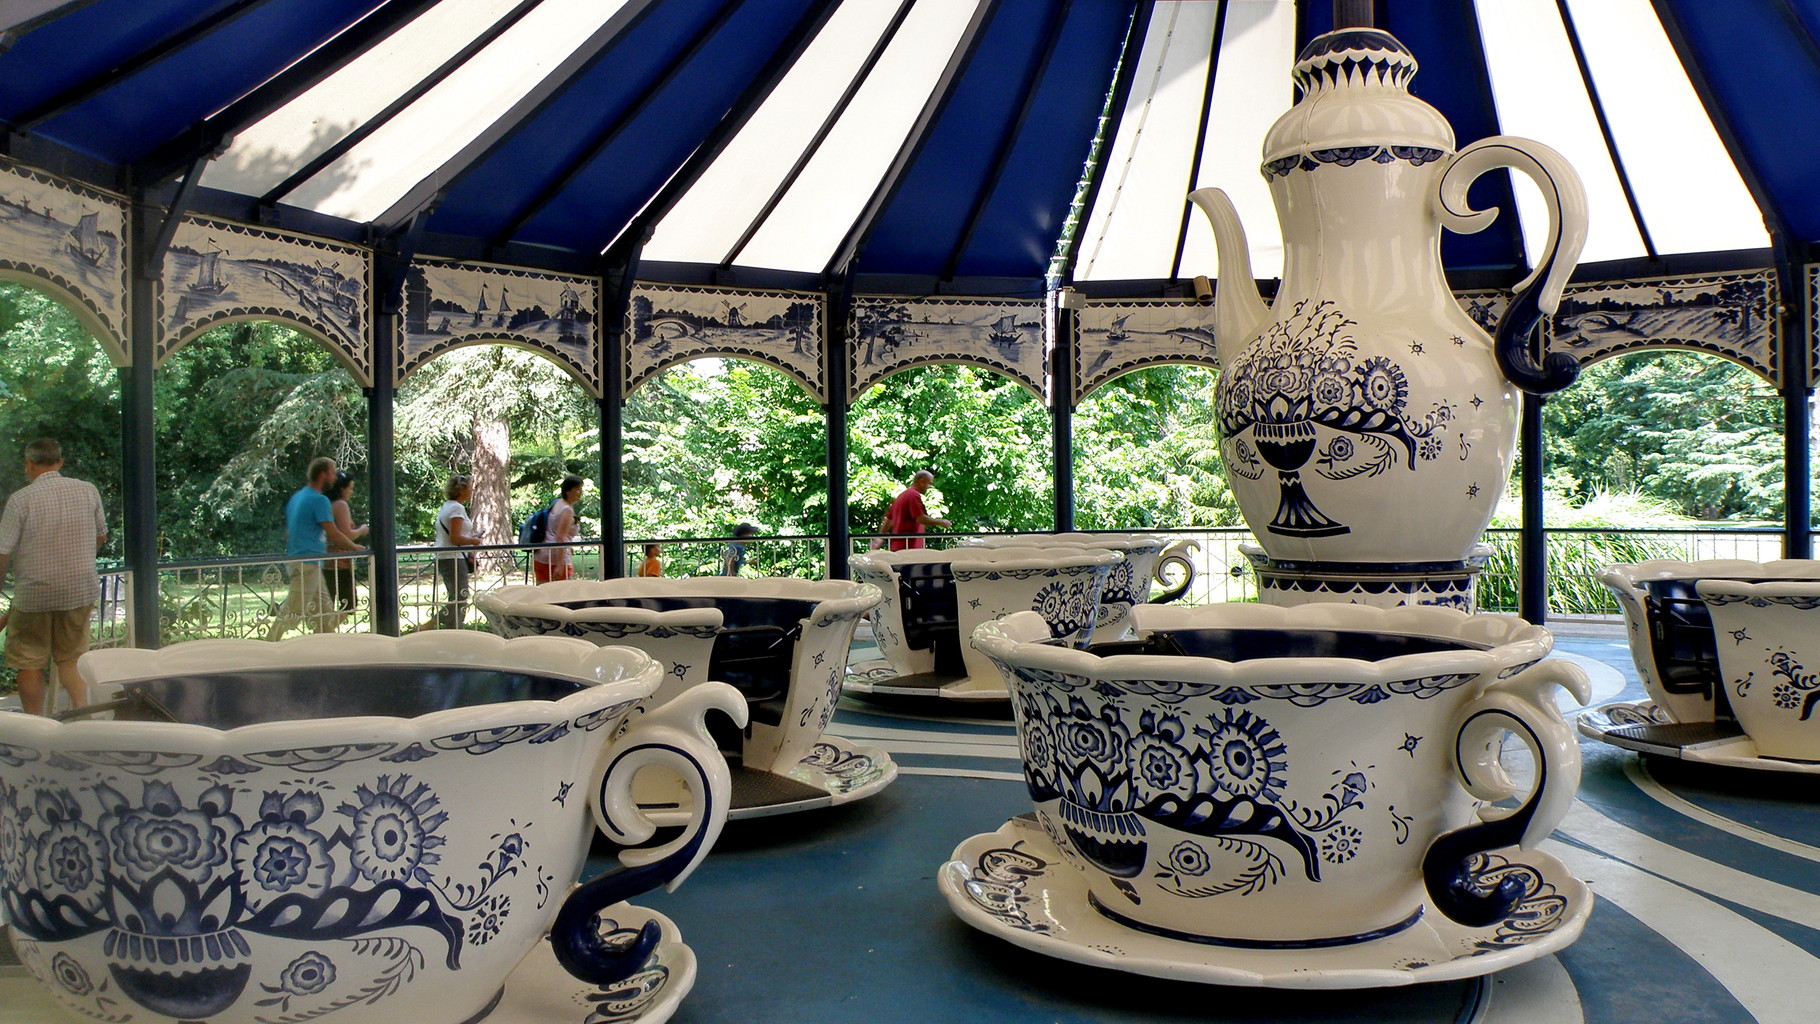 Parc d'attractions de Walibi - la folle partie de thé